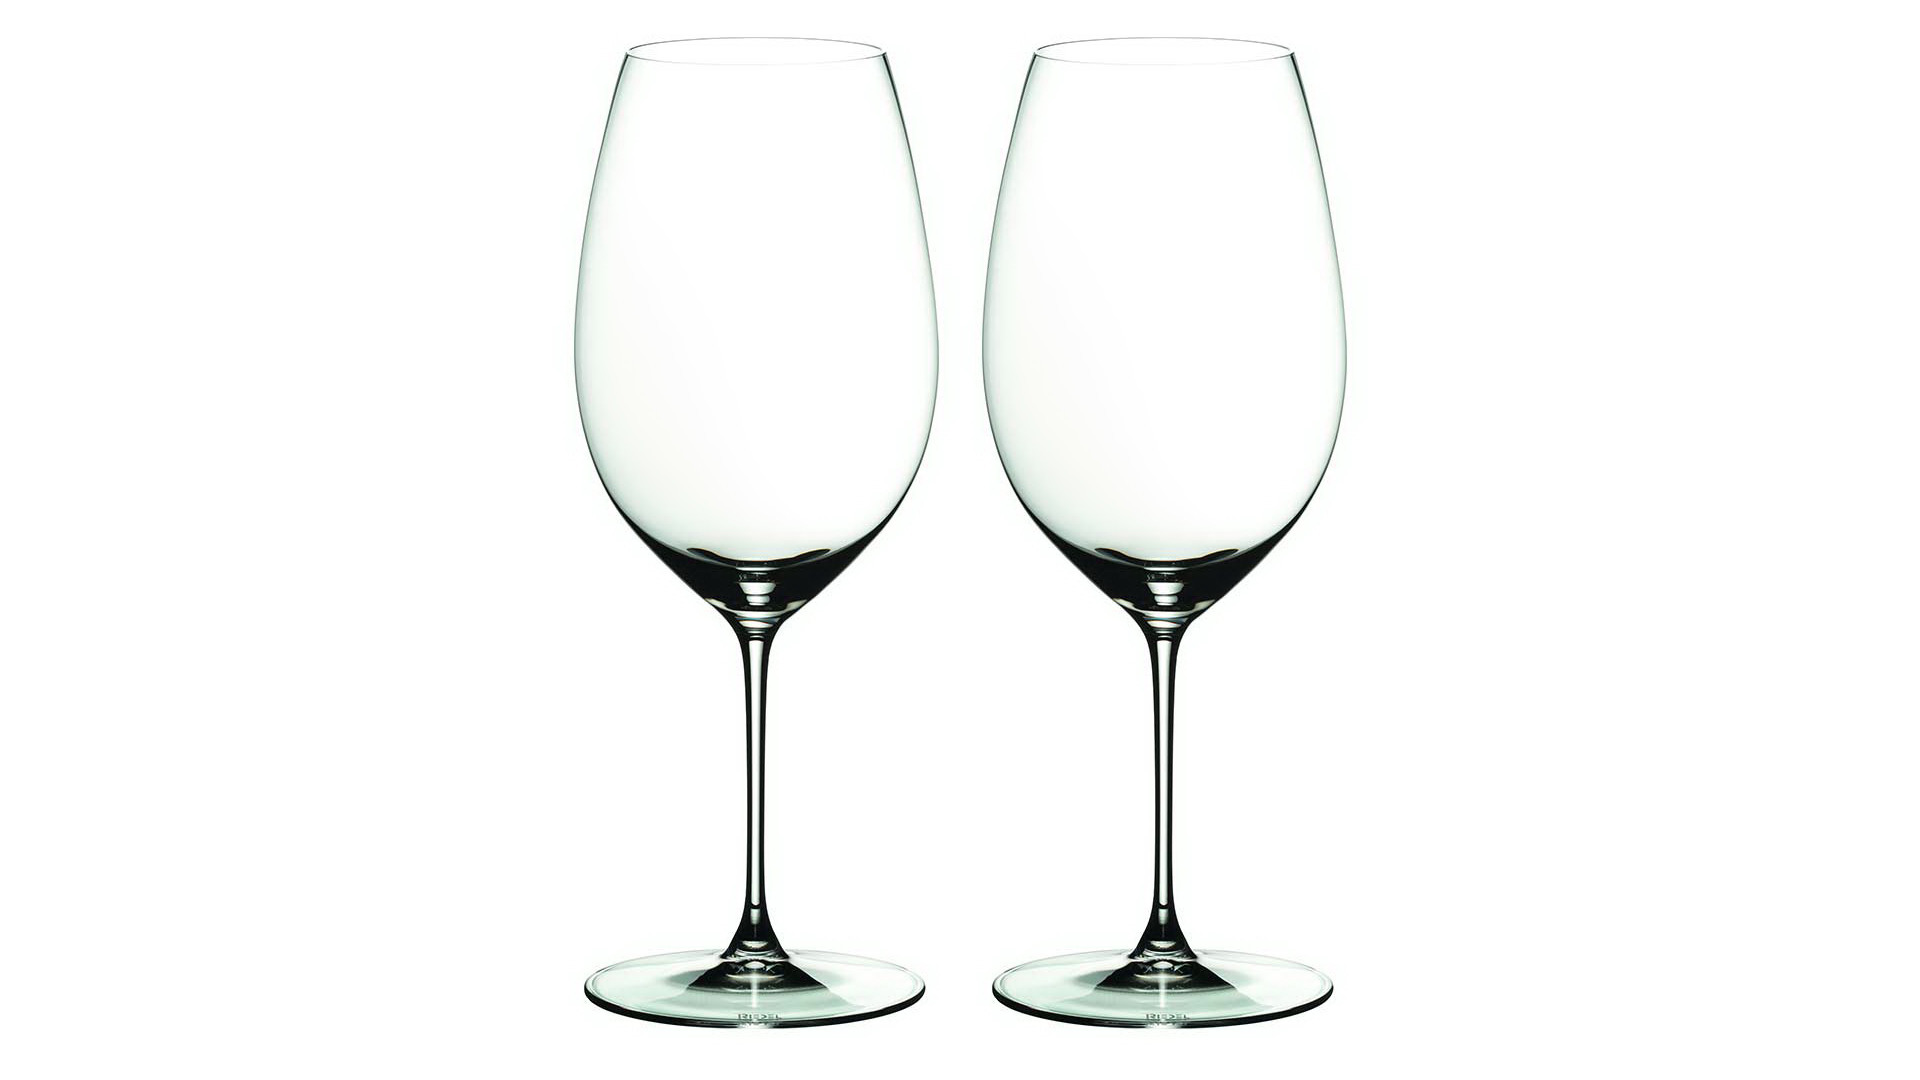 Набор бокалов для красного вина Riedel Veritas New World Shiraz 709 мл, 2 шт, стекло хрустальное